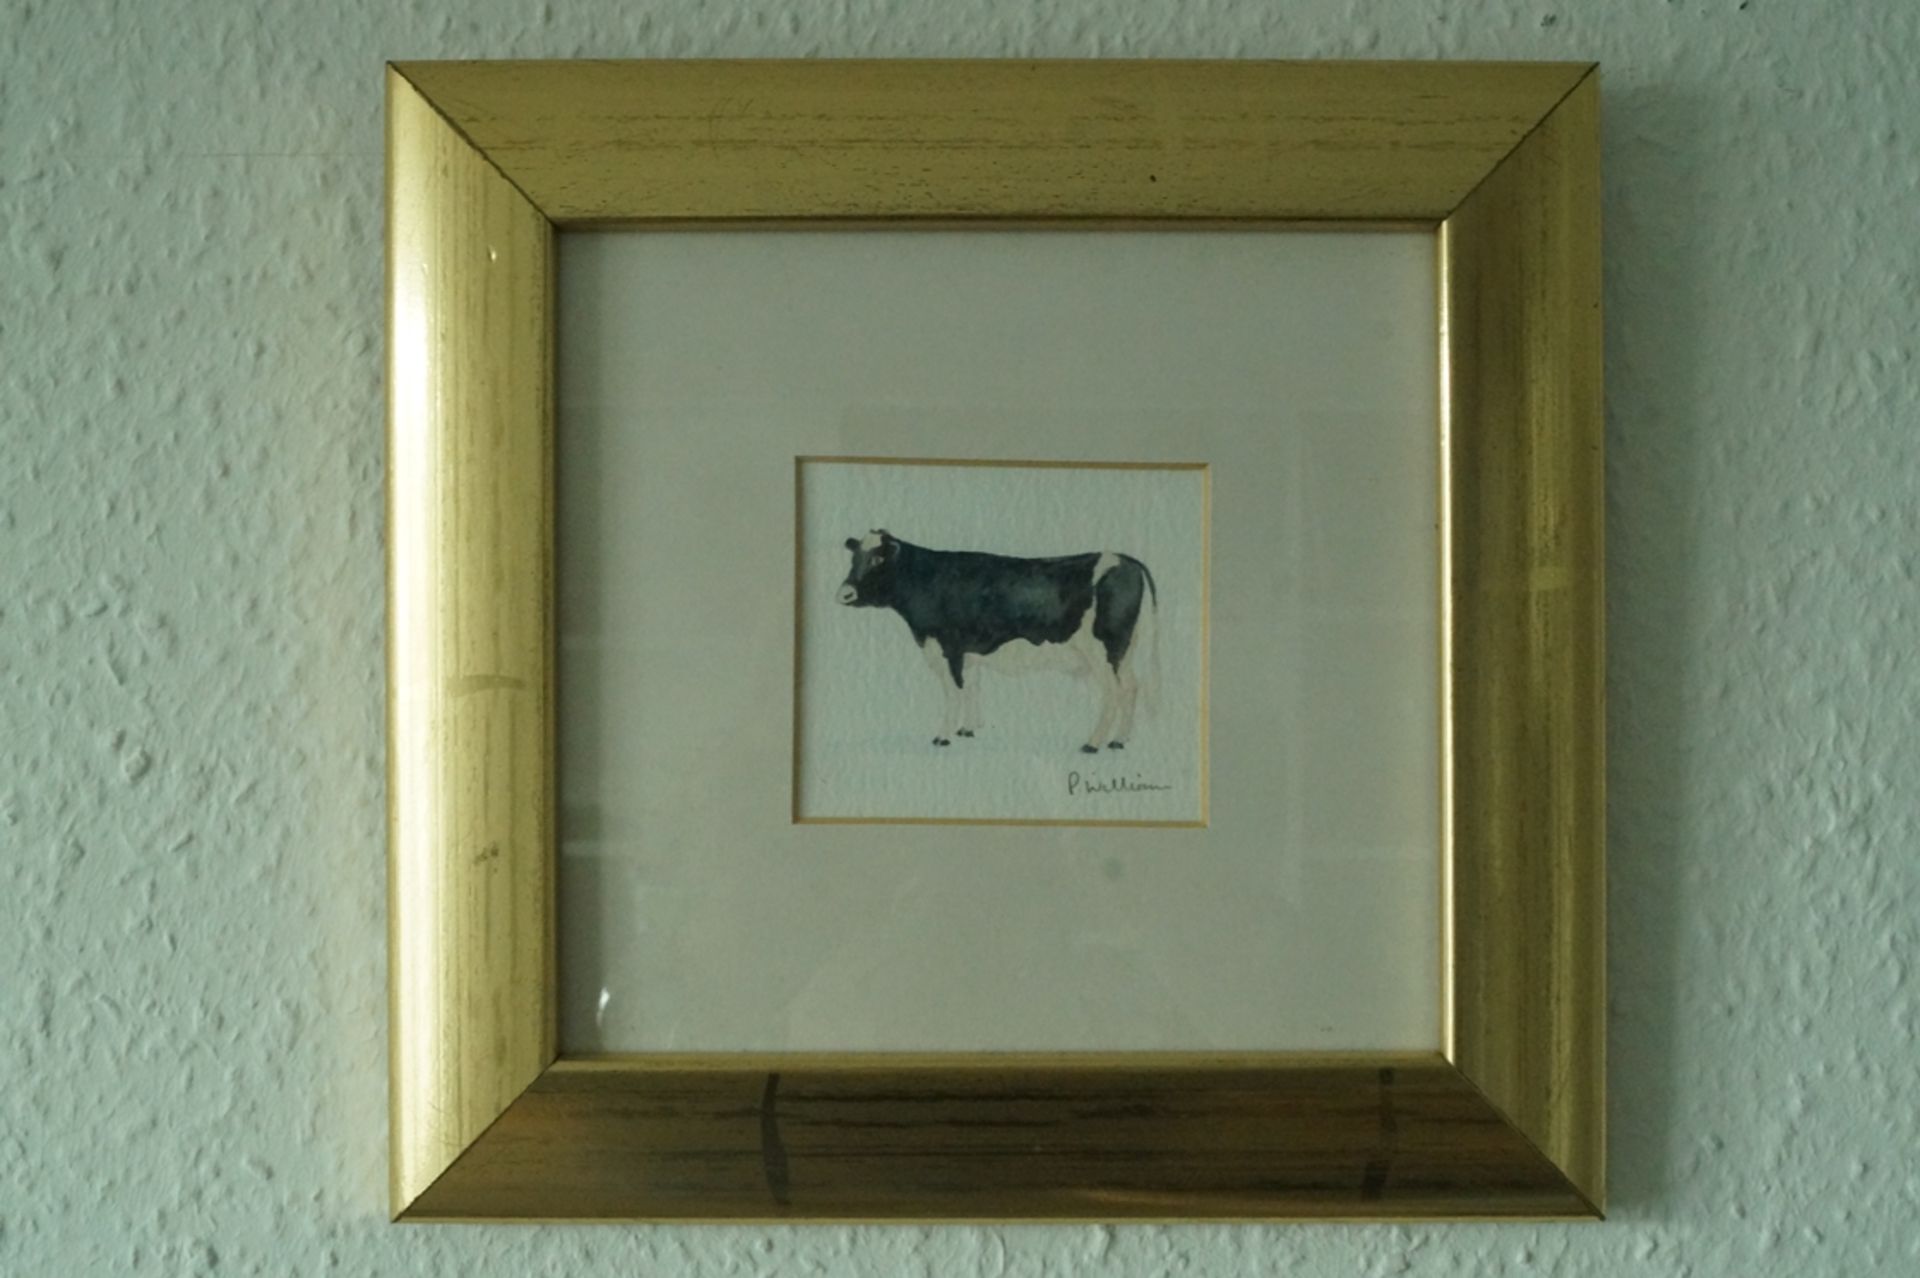 3er Reihe moderner Bilder mit Tiermotiven; Darstellung von Kuh, Schwein und Schafbock in Aquarellte - Bild 5 aus 5